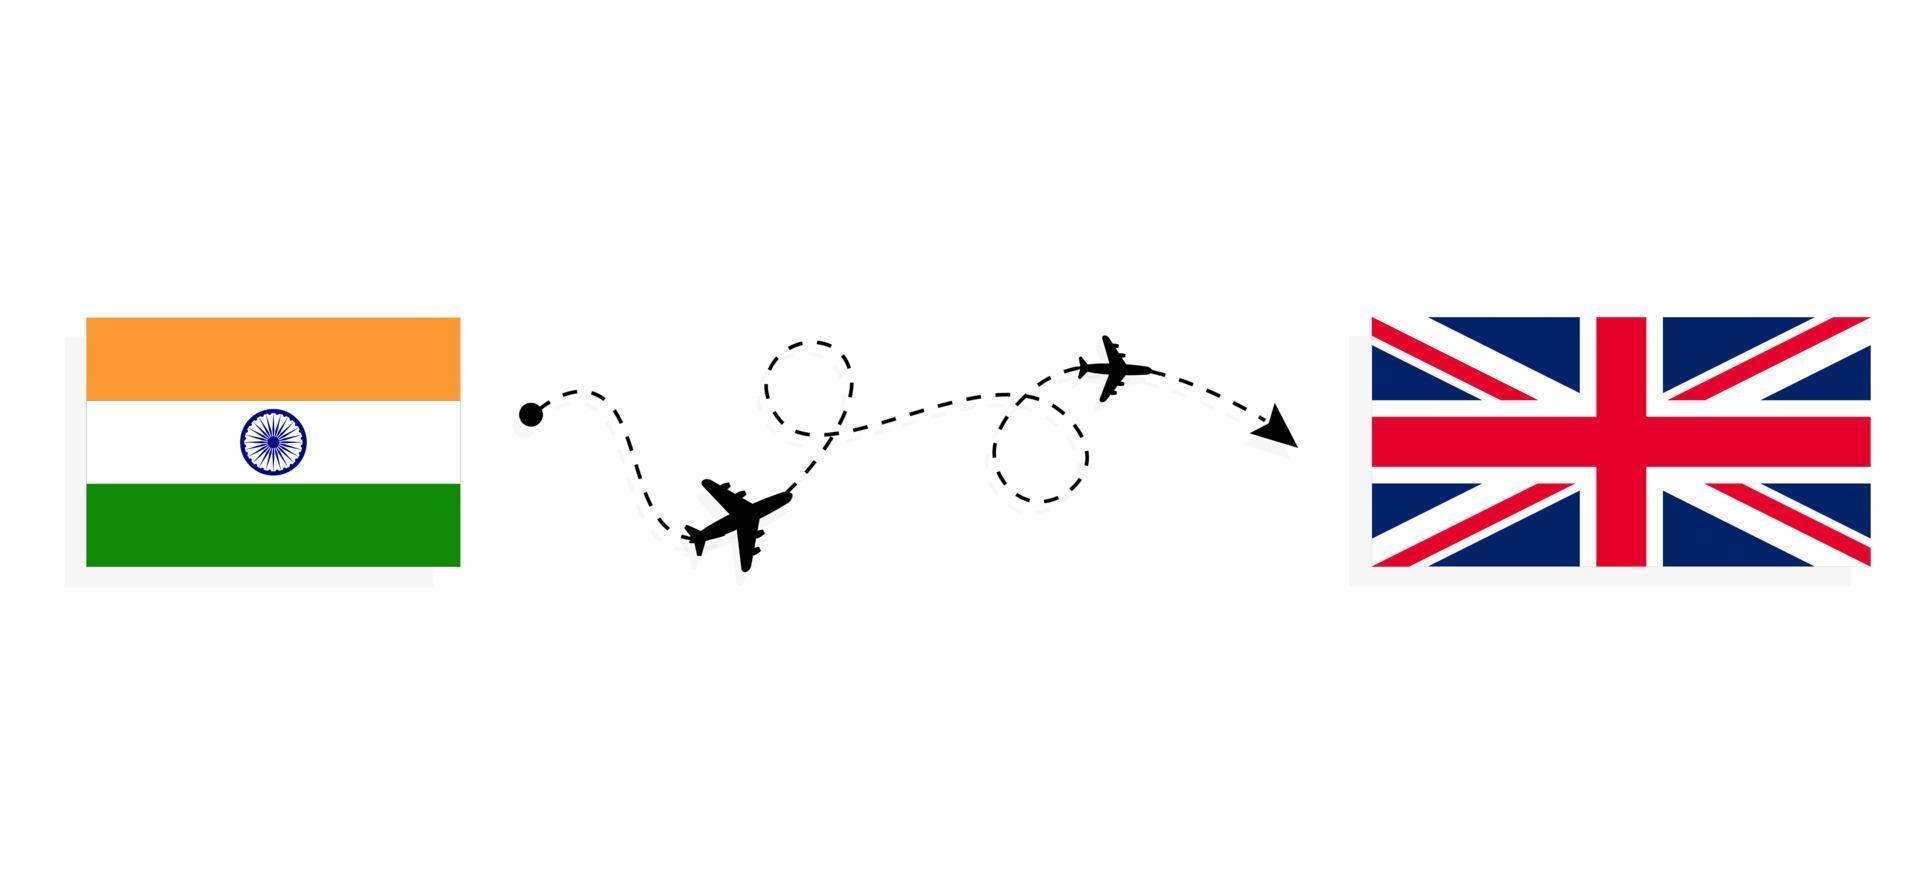 flug und reise von indien nach vereinigtes königreich von großbritannien mit dem reisekonzept für das Passagierflugzeug vektor